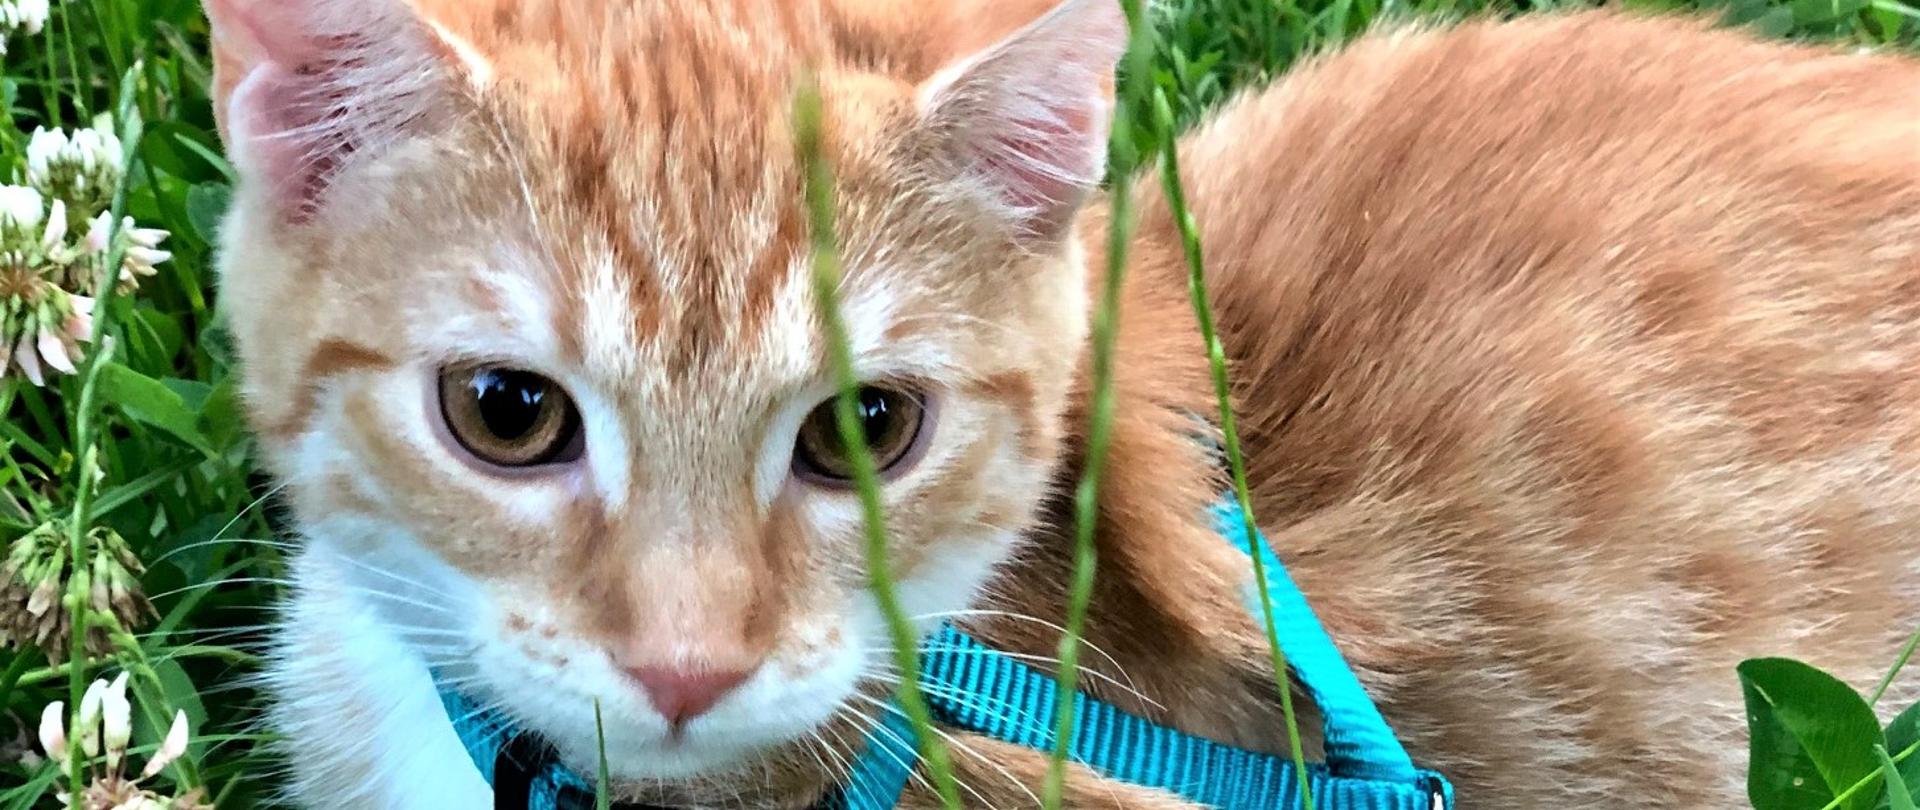 rudy kot na zielonej trawie